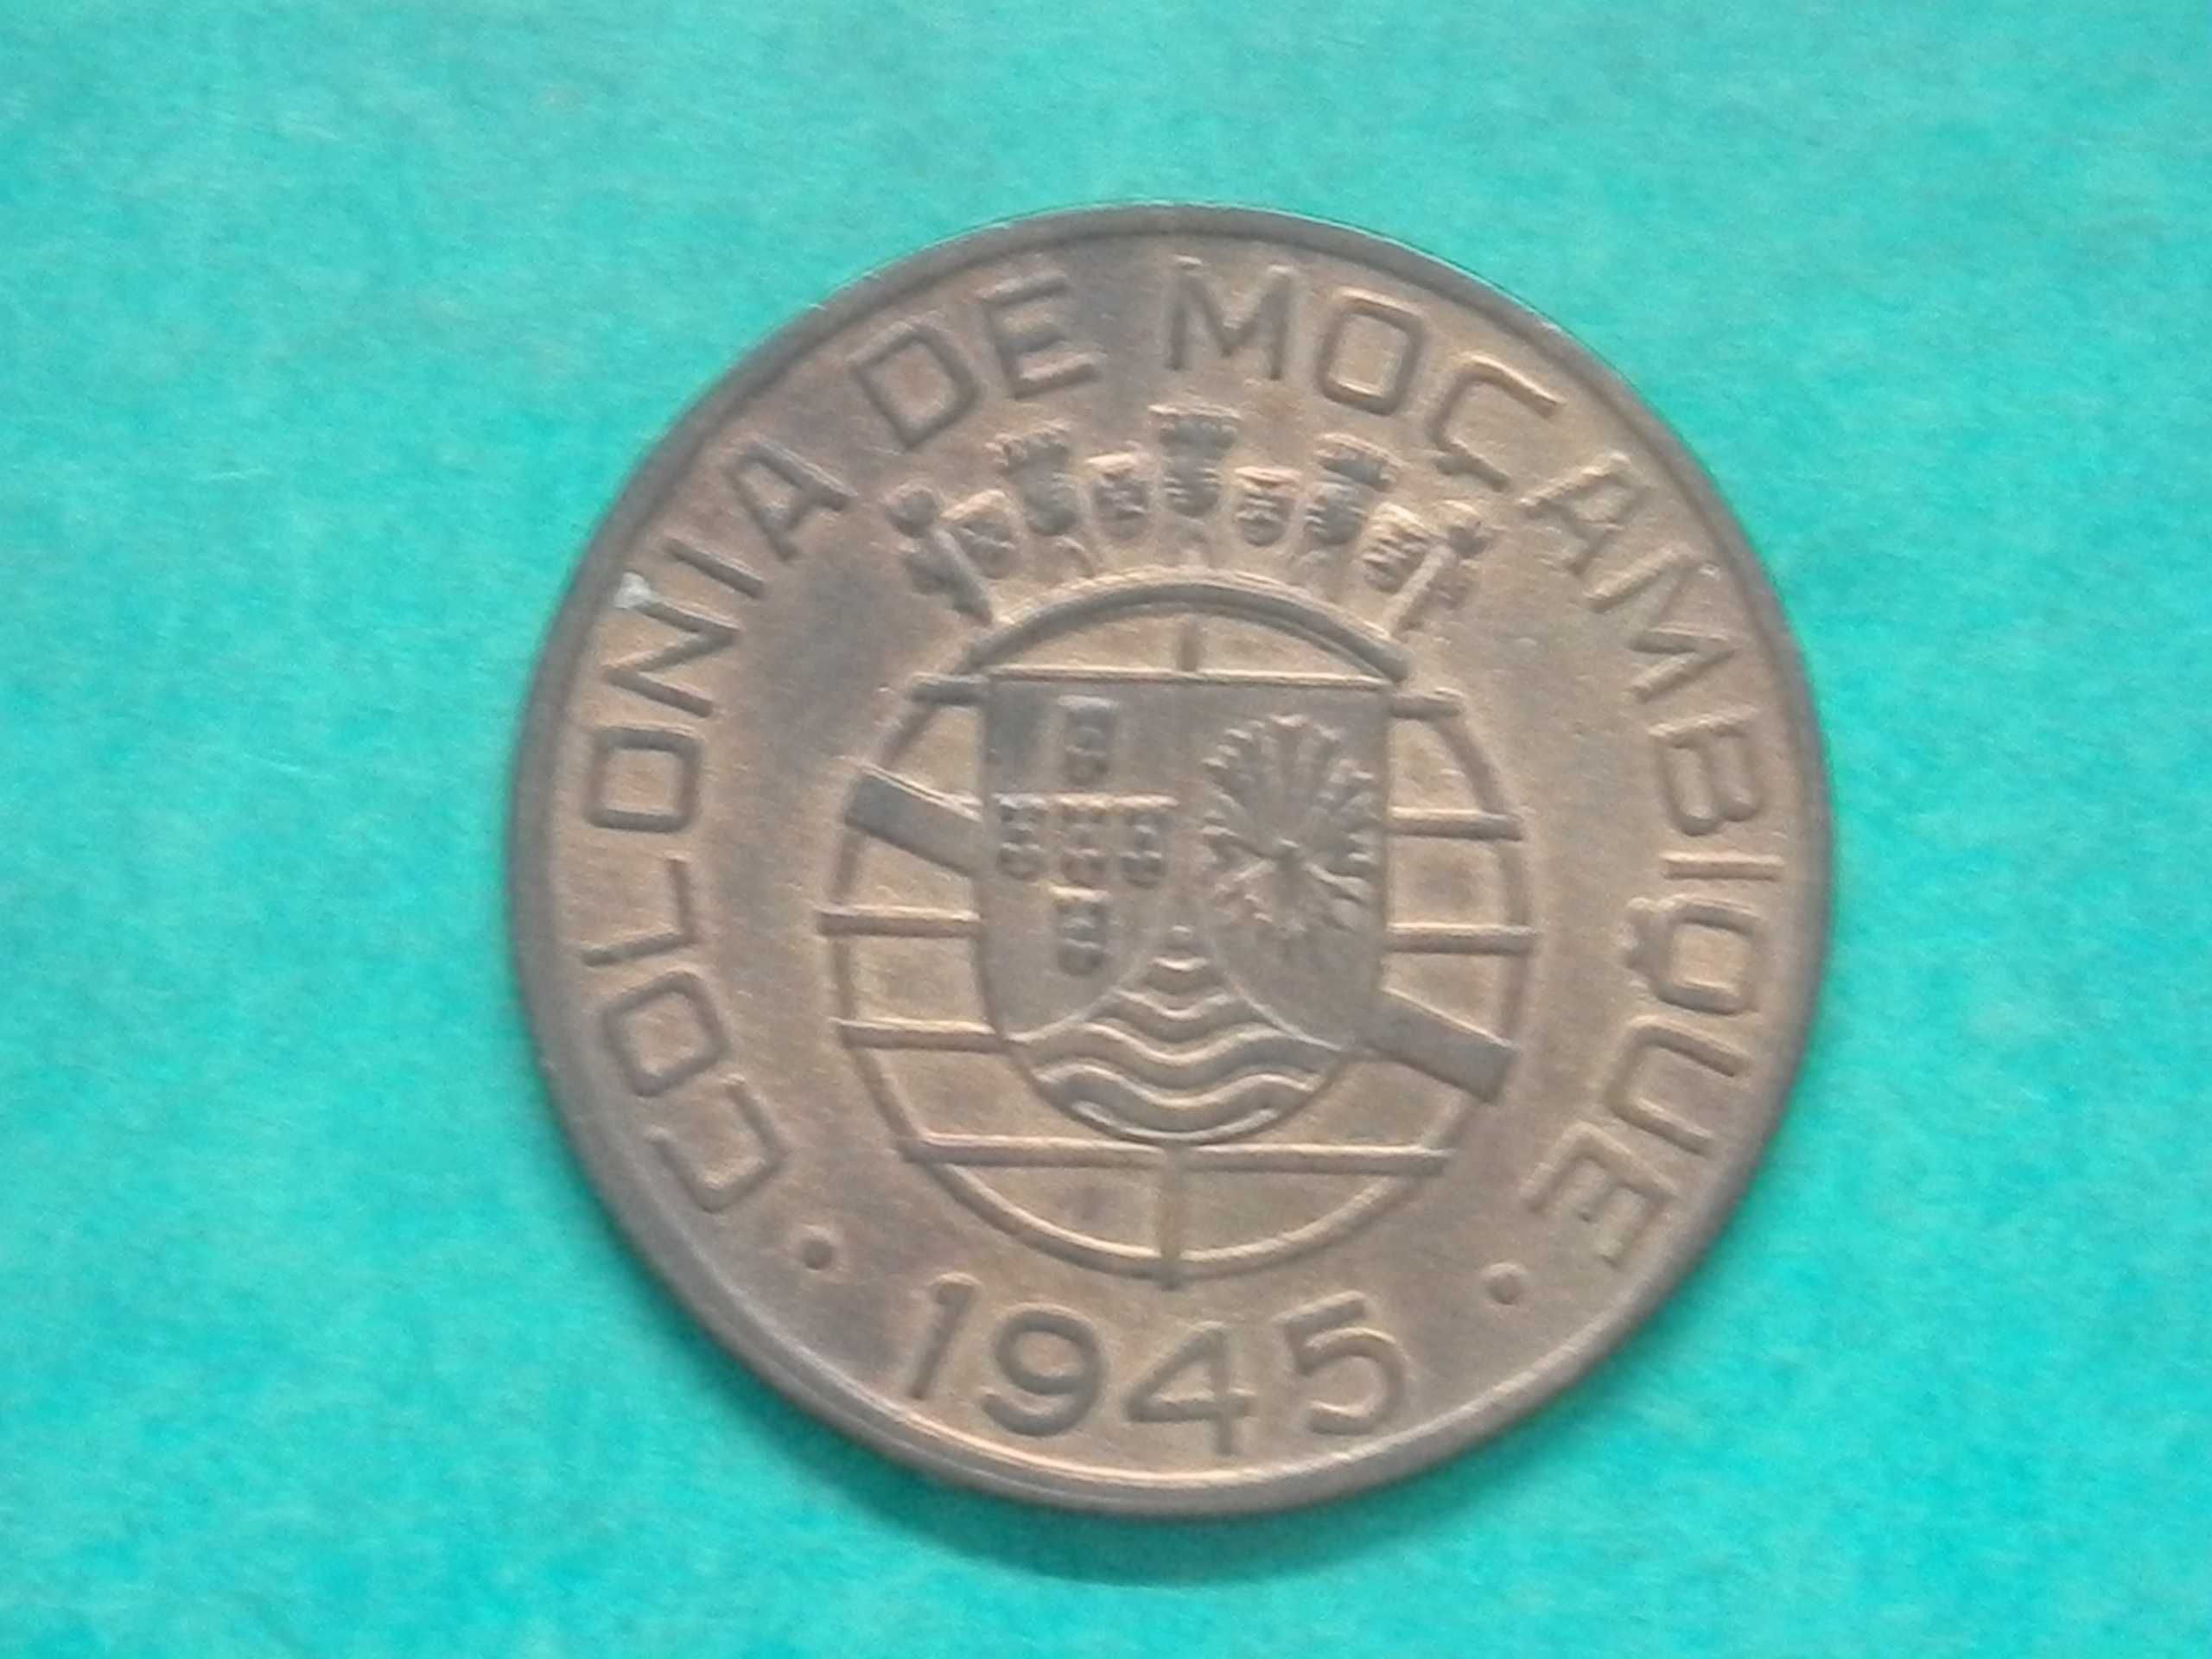 930 - Moçambique: 1 escudo 1945 bronze, por 12,00